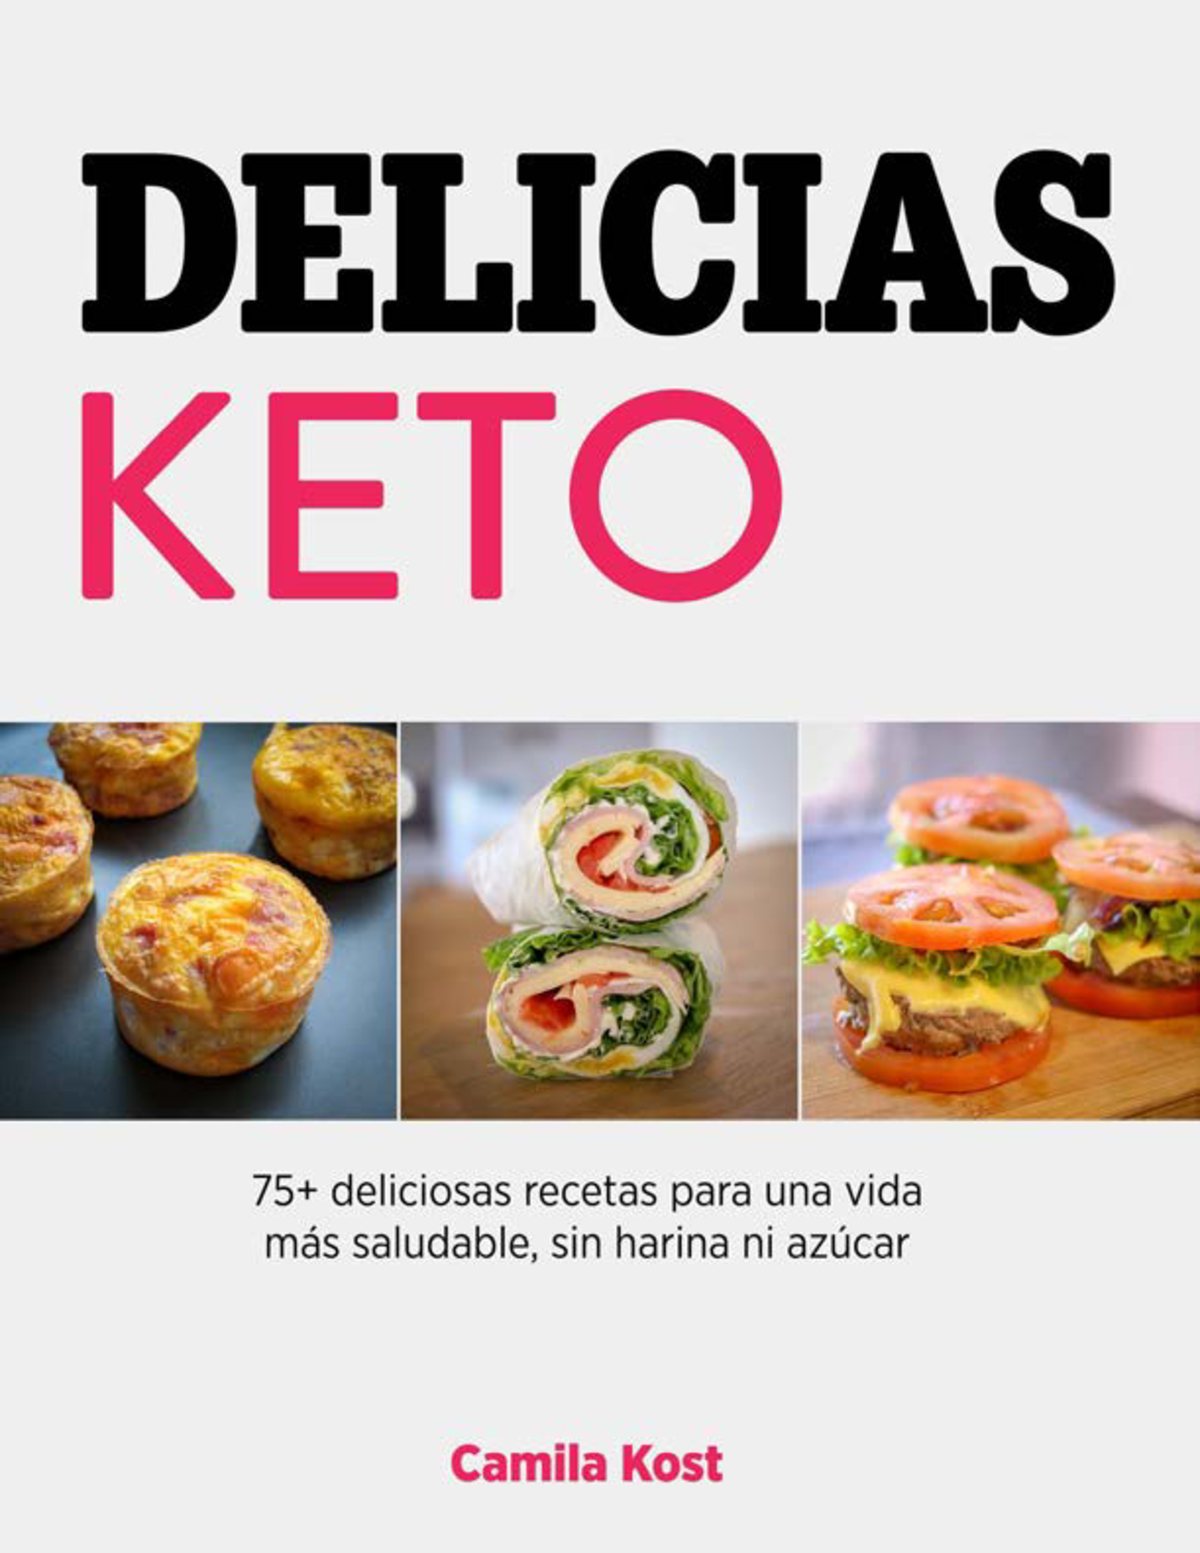 Delicias-Keto-v22 - adfadsfadfa - INTRODUCCIÓN Sumérgete entre nuestras  deliciosas recetas keto. La - Studocu